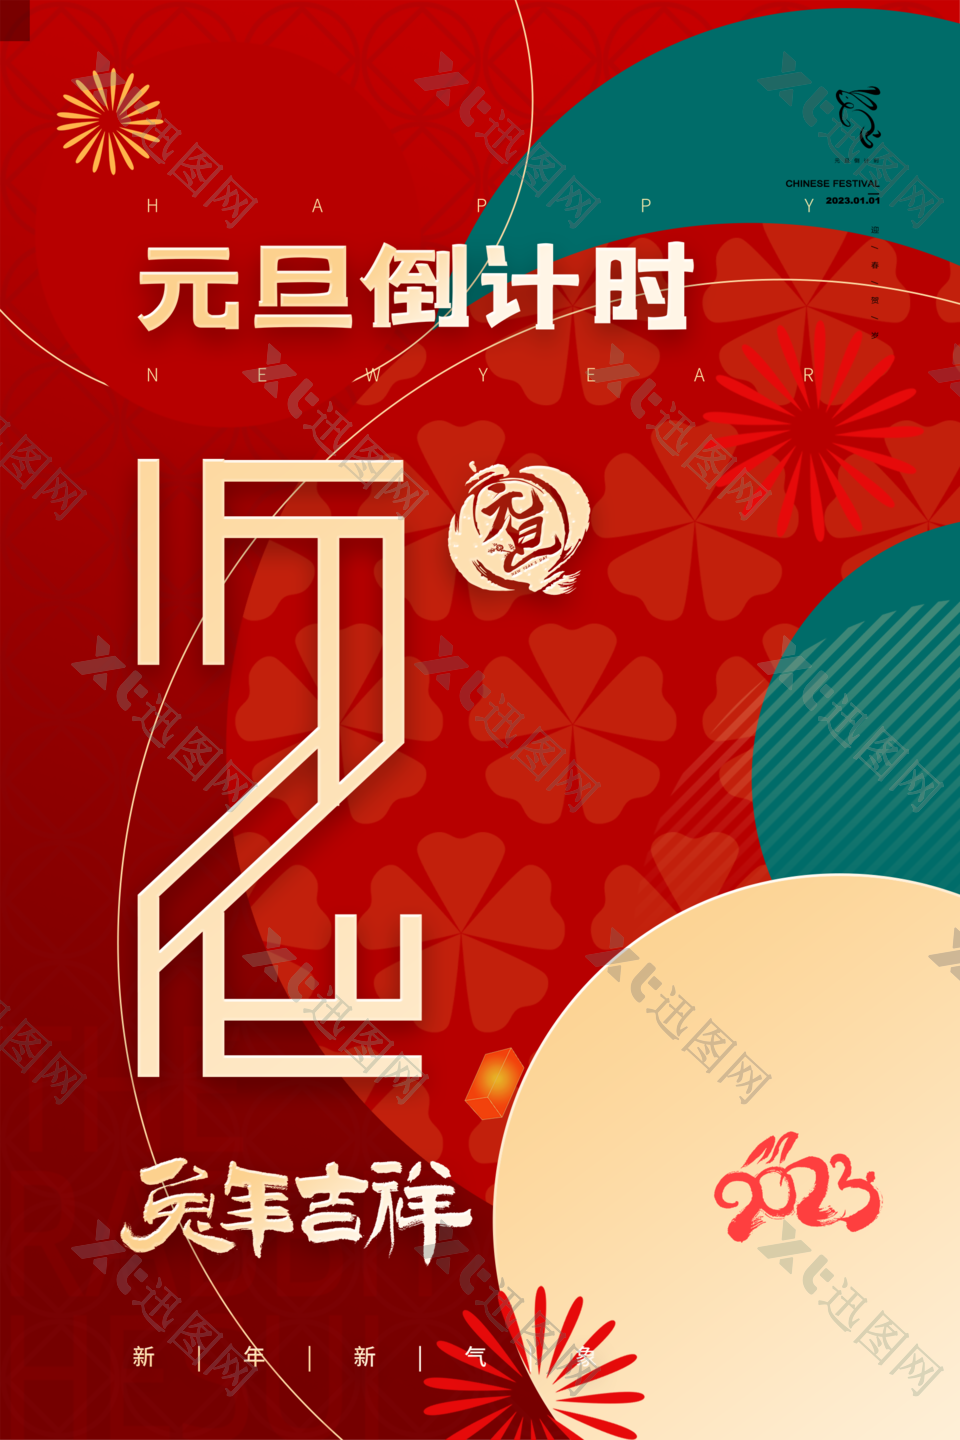 2023年新年元旦节日海报下载